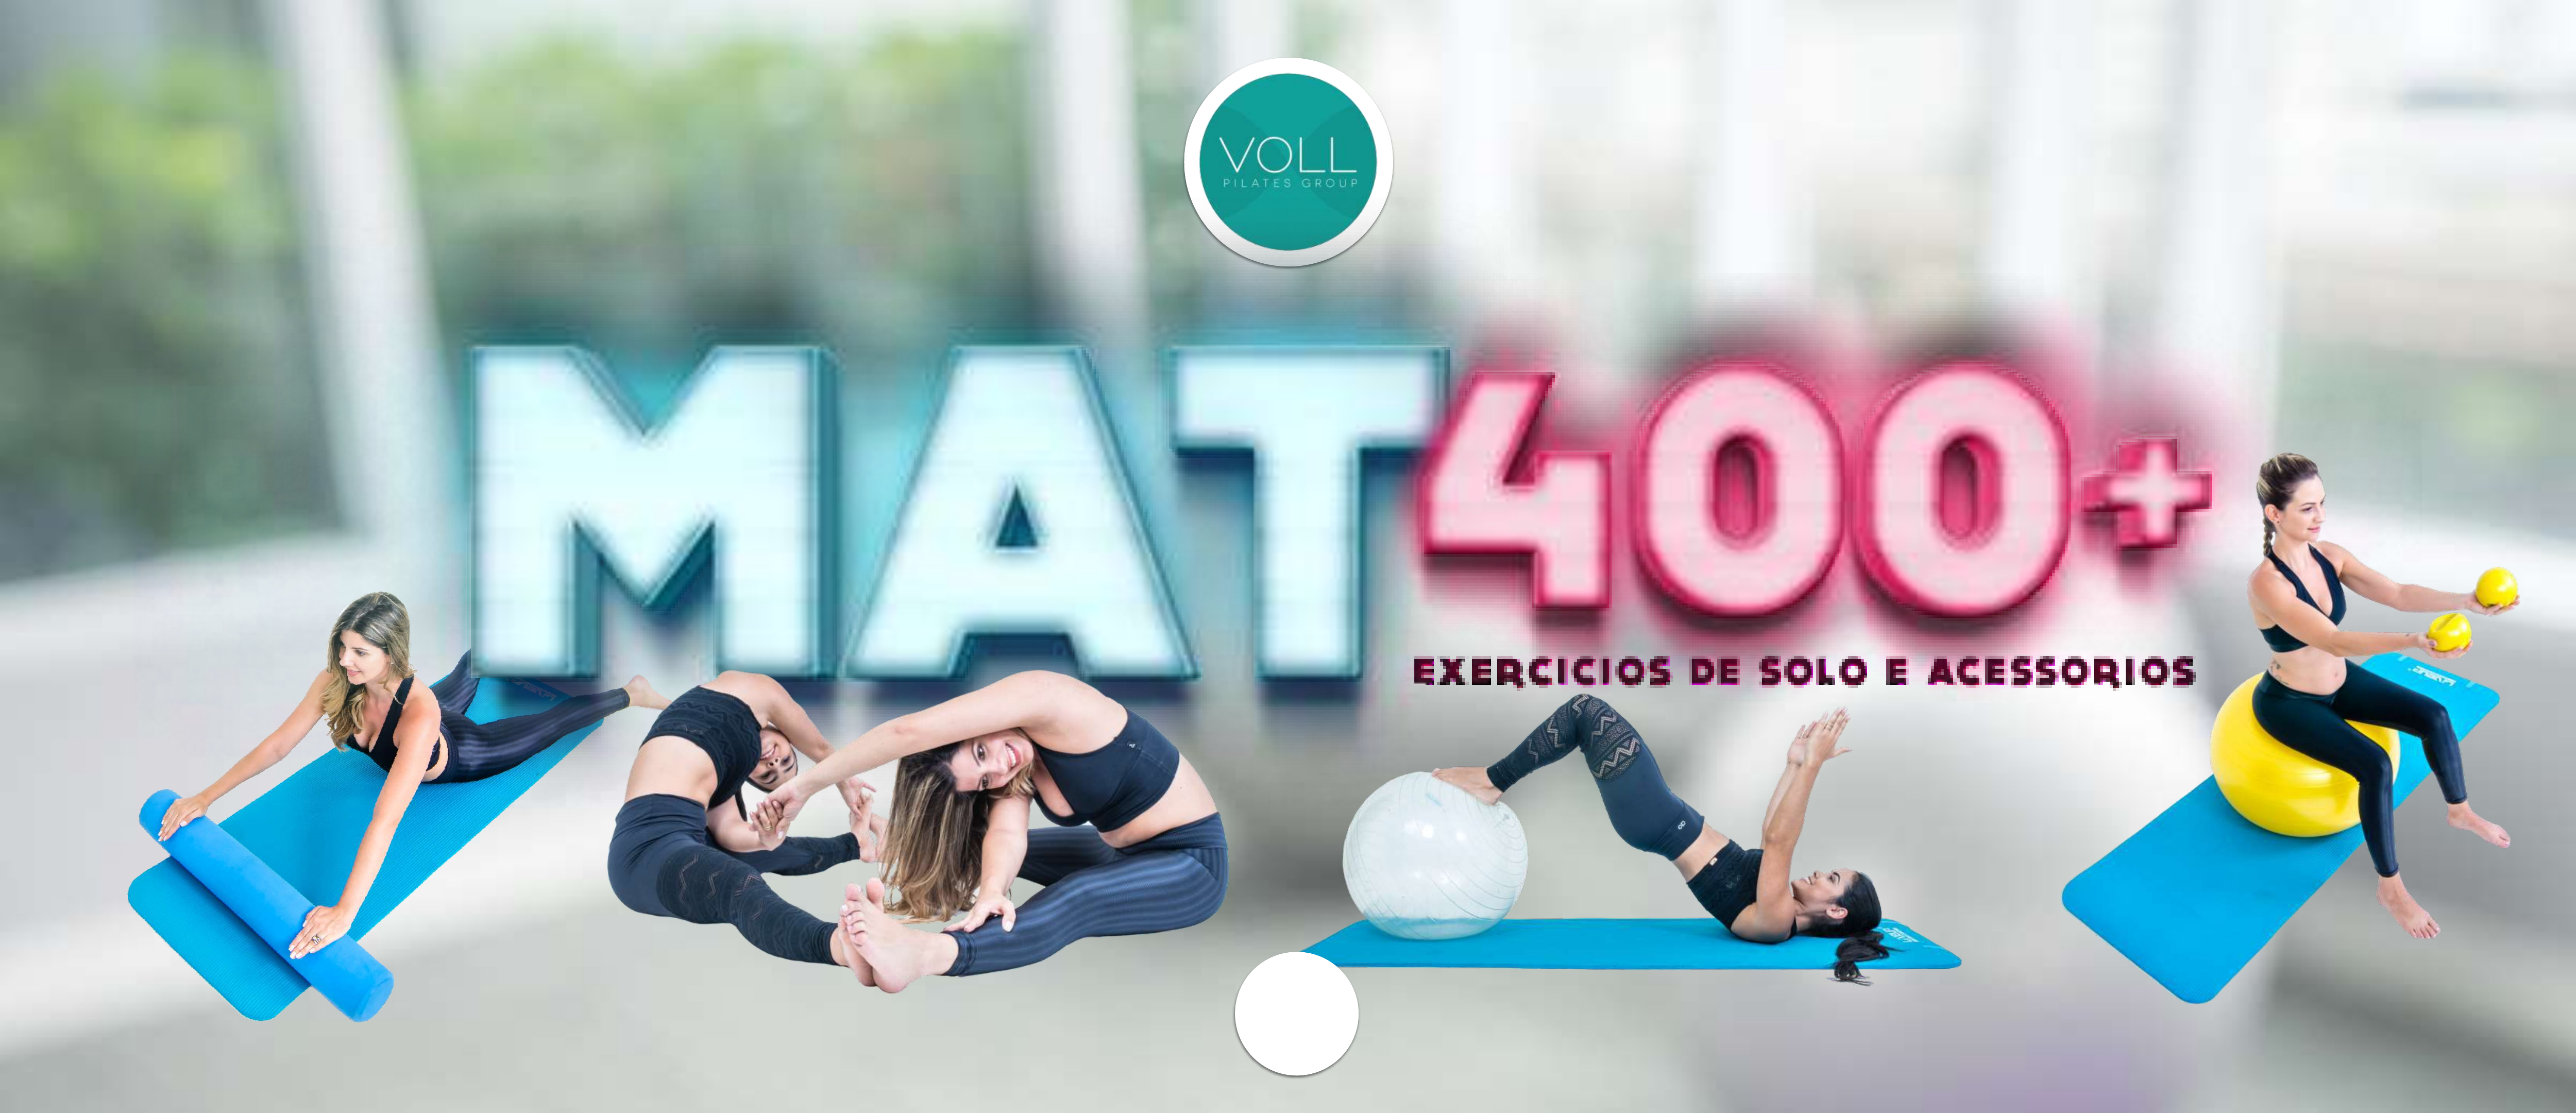 MAT PILATES 400 EXERCICIOS DE SOLO E ACESSORIOS - Pilates (solo/aparelhos)